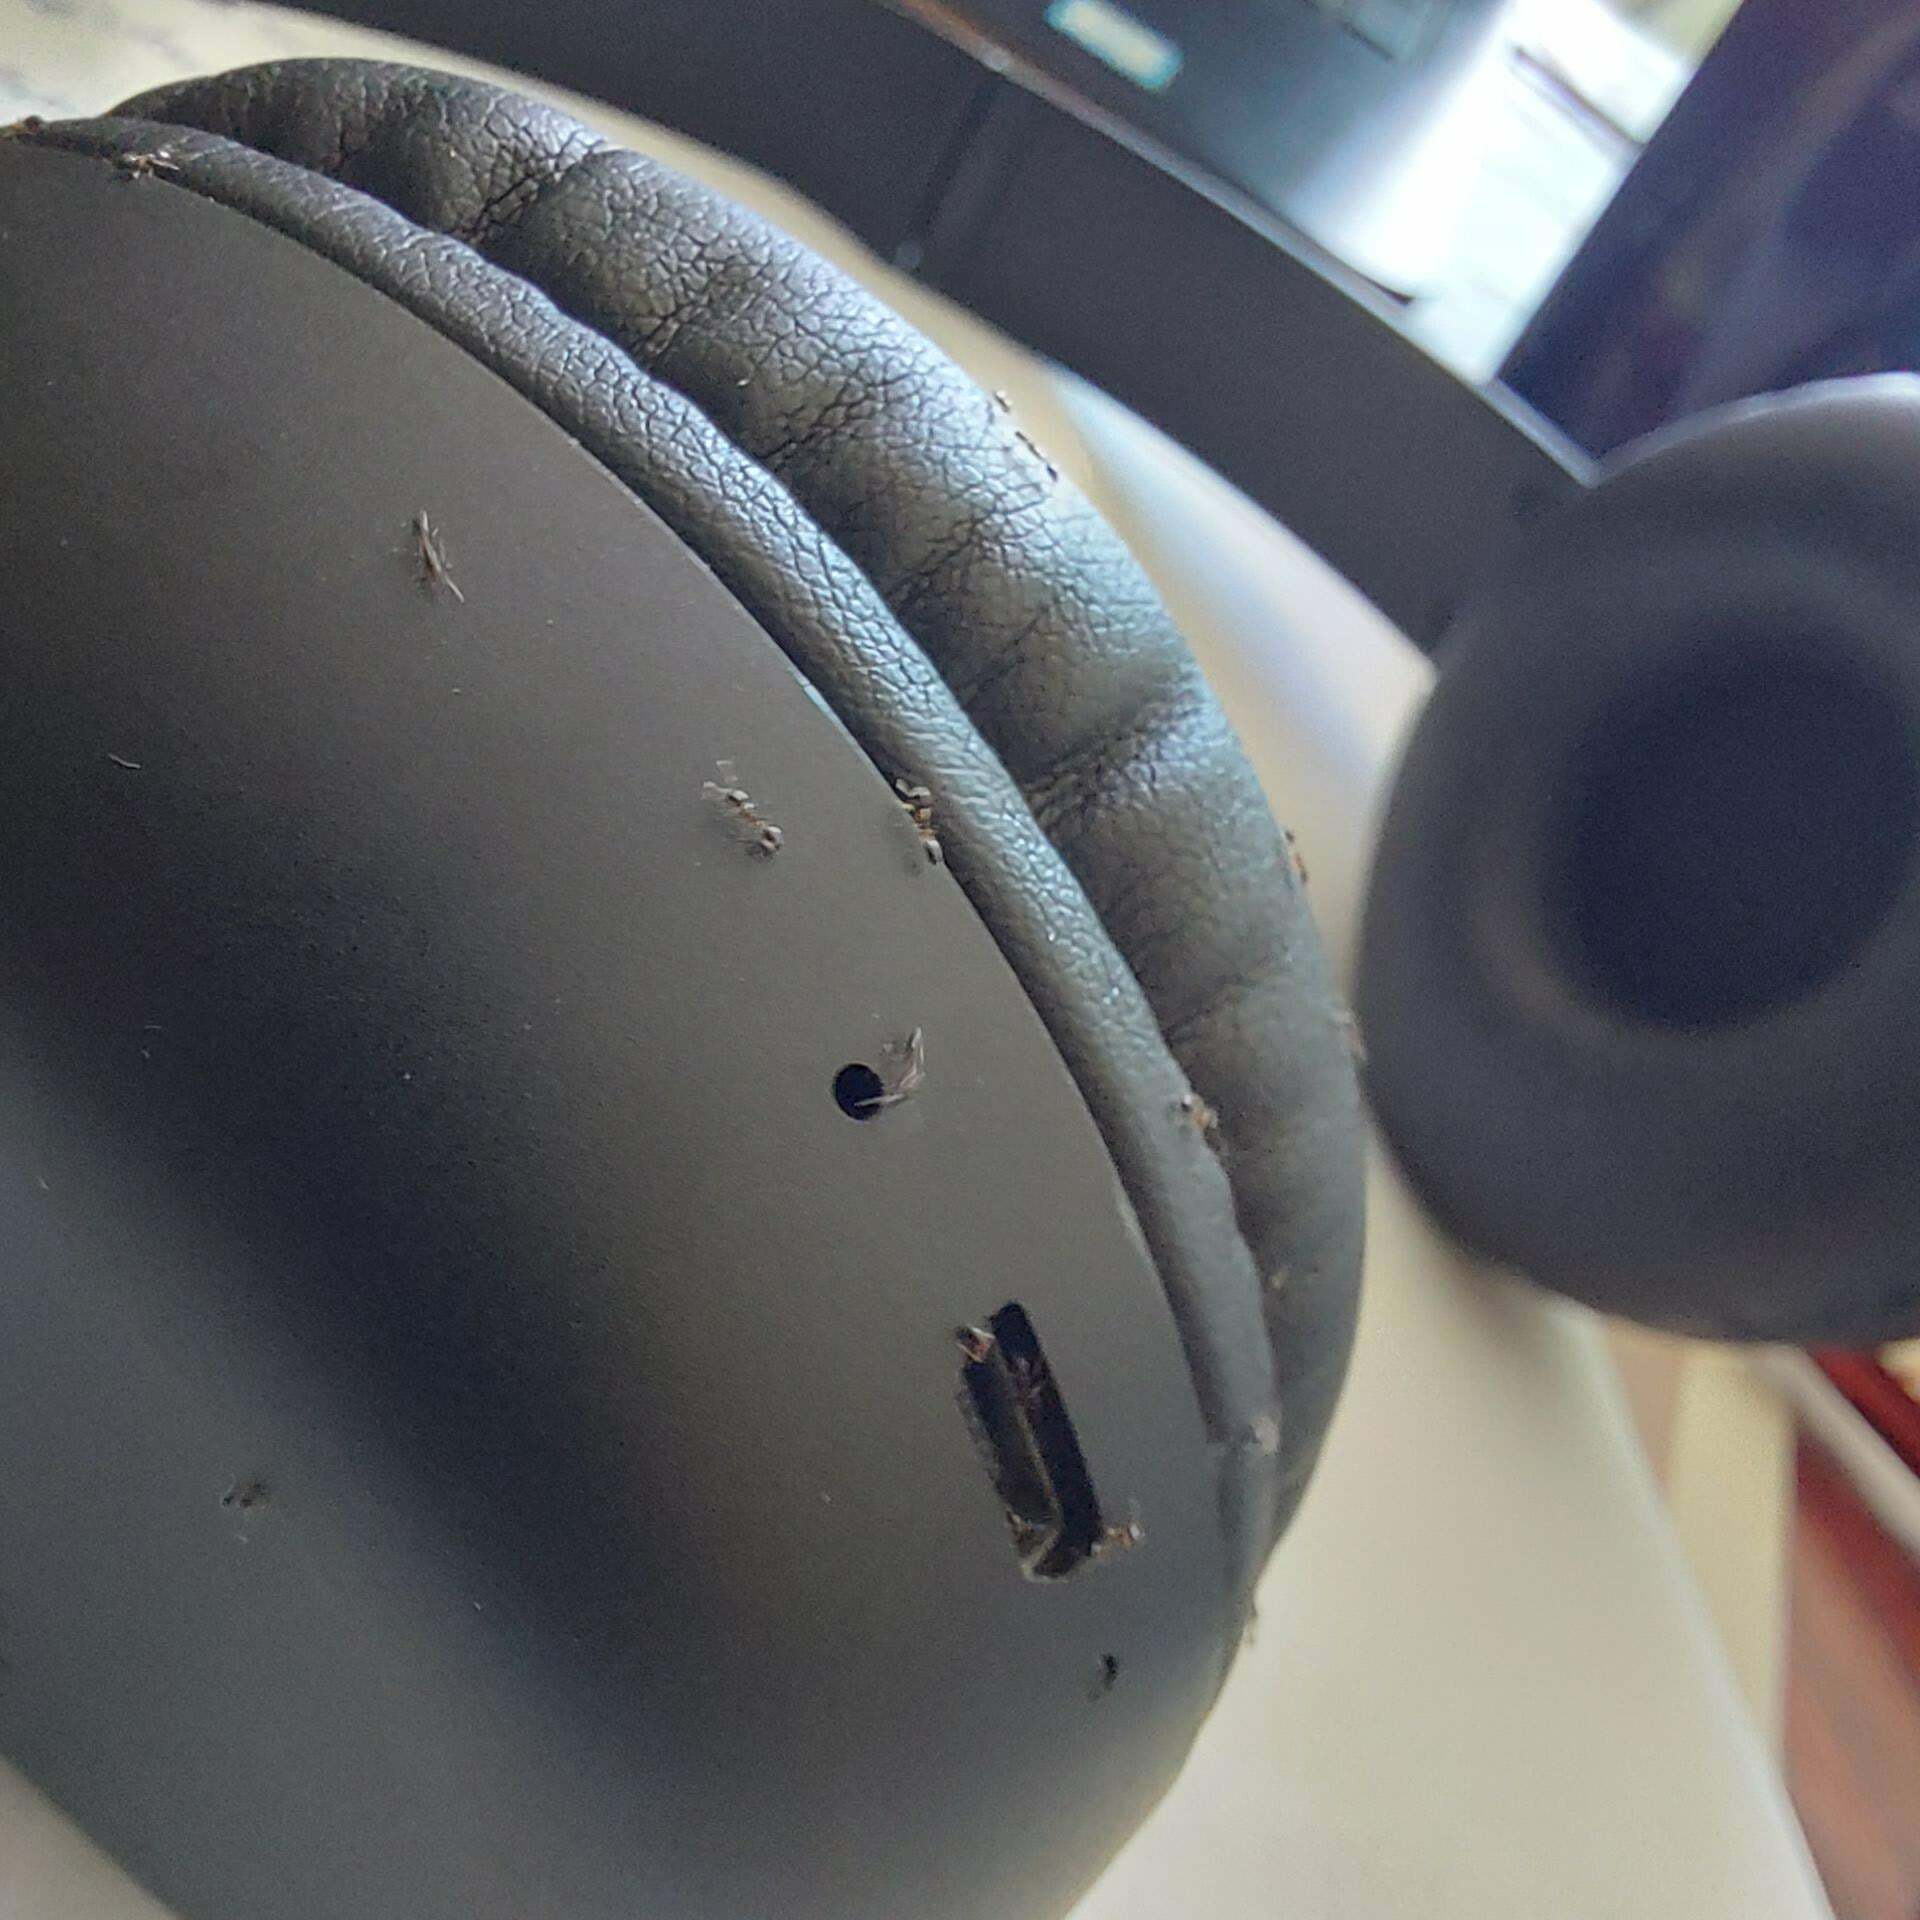 Mon casque d’écoute a soudainement cessé de fonctionner. Il était plein de fourmis